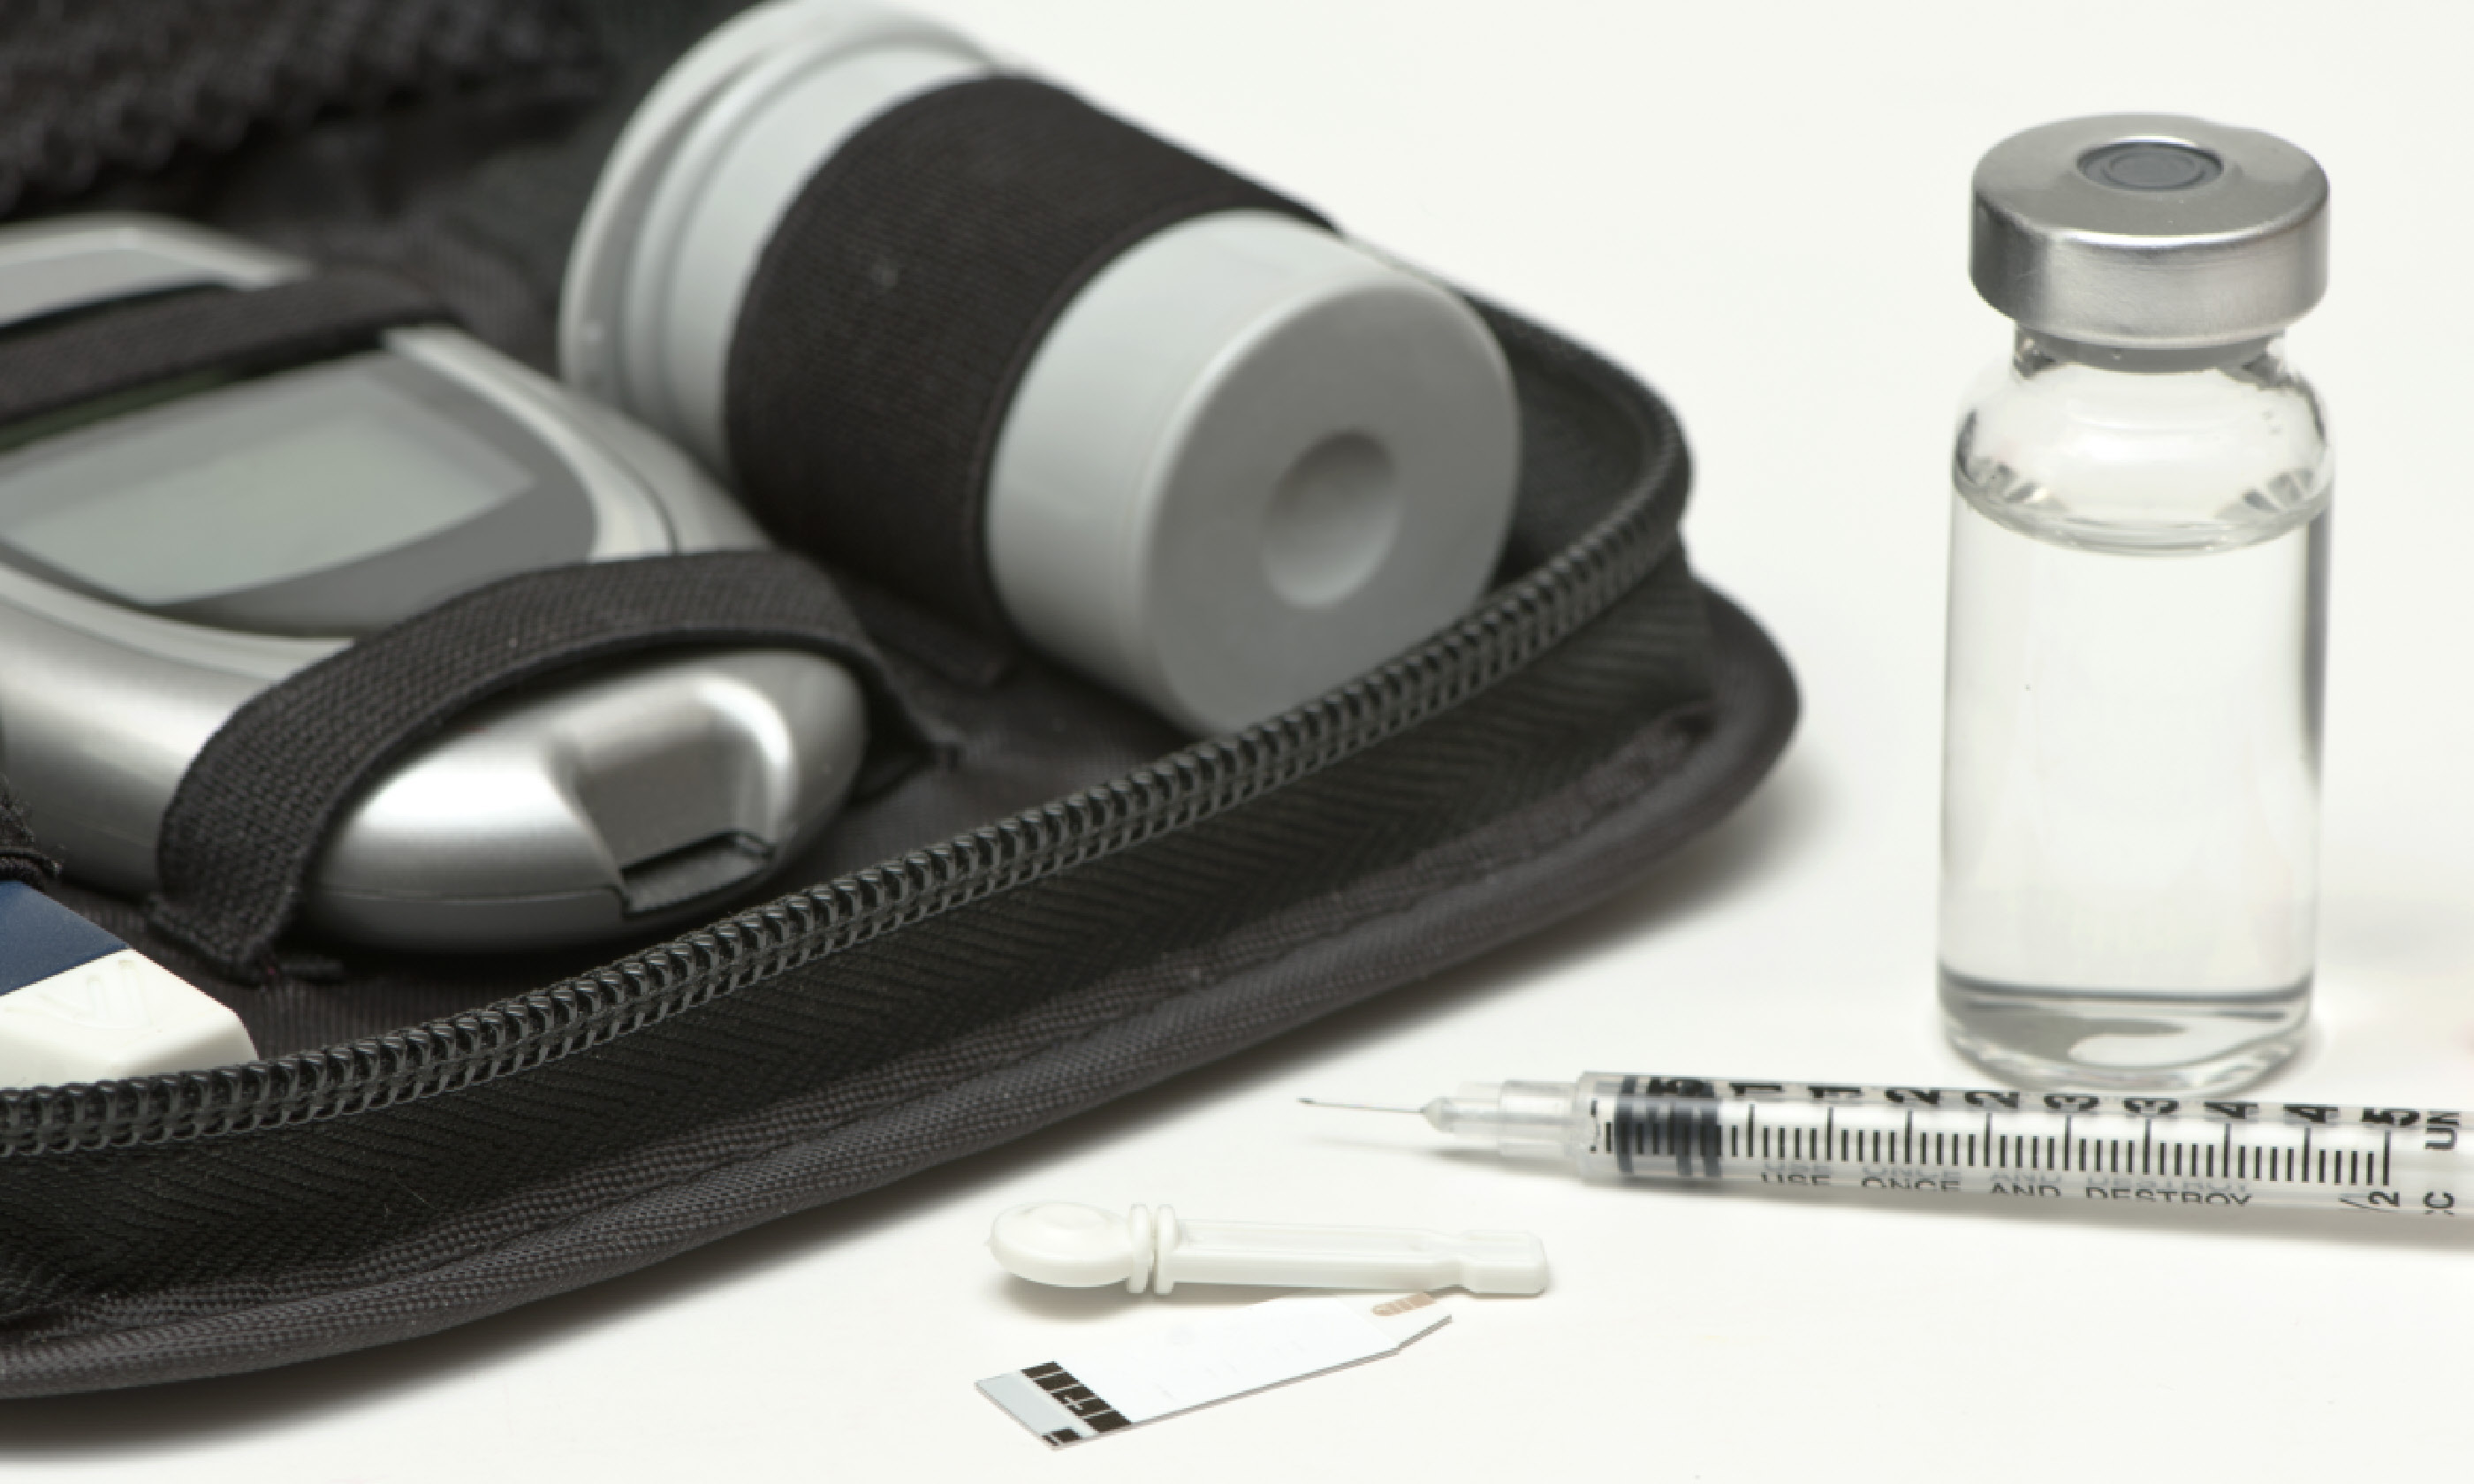 Diabetic travel kit case (Shutterstock)